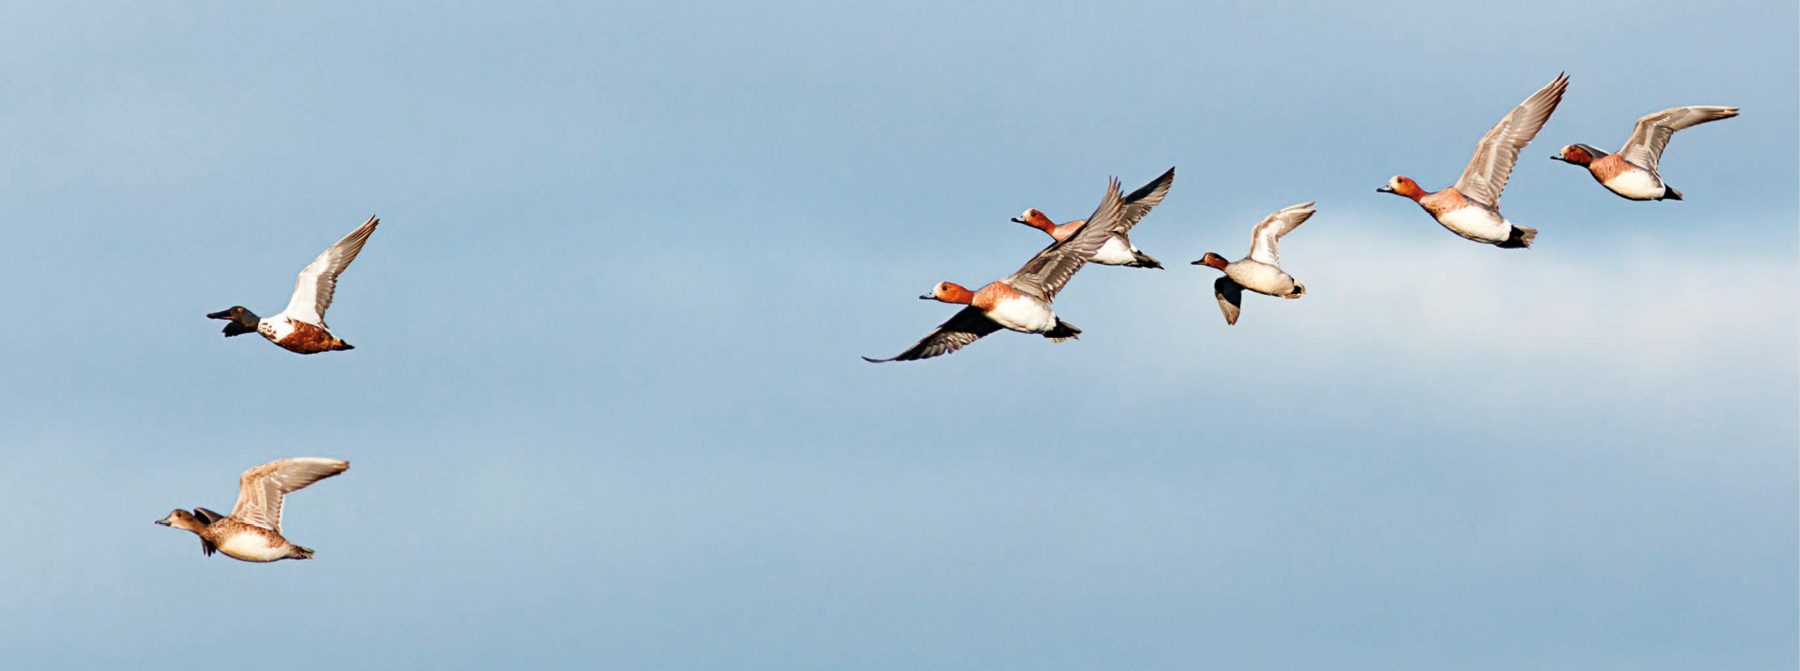 Fotografia. Sete aves voando no céu, para a mesma direção. Têm penas brancas no corpo e cabeça alaranjada.